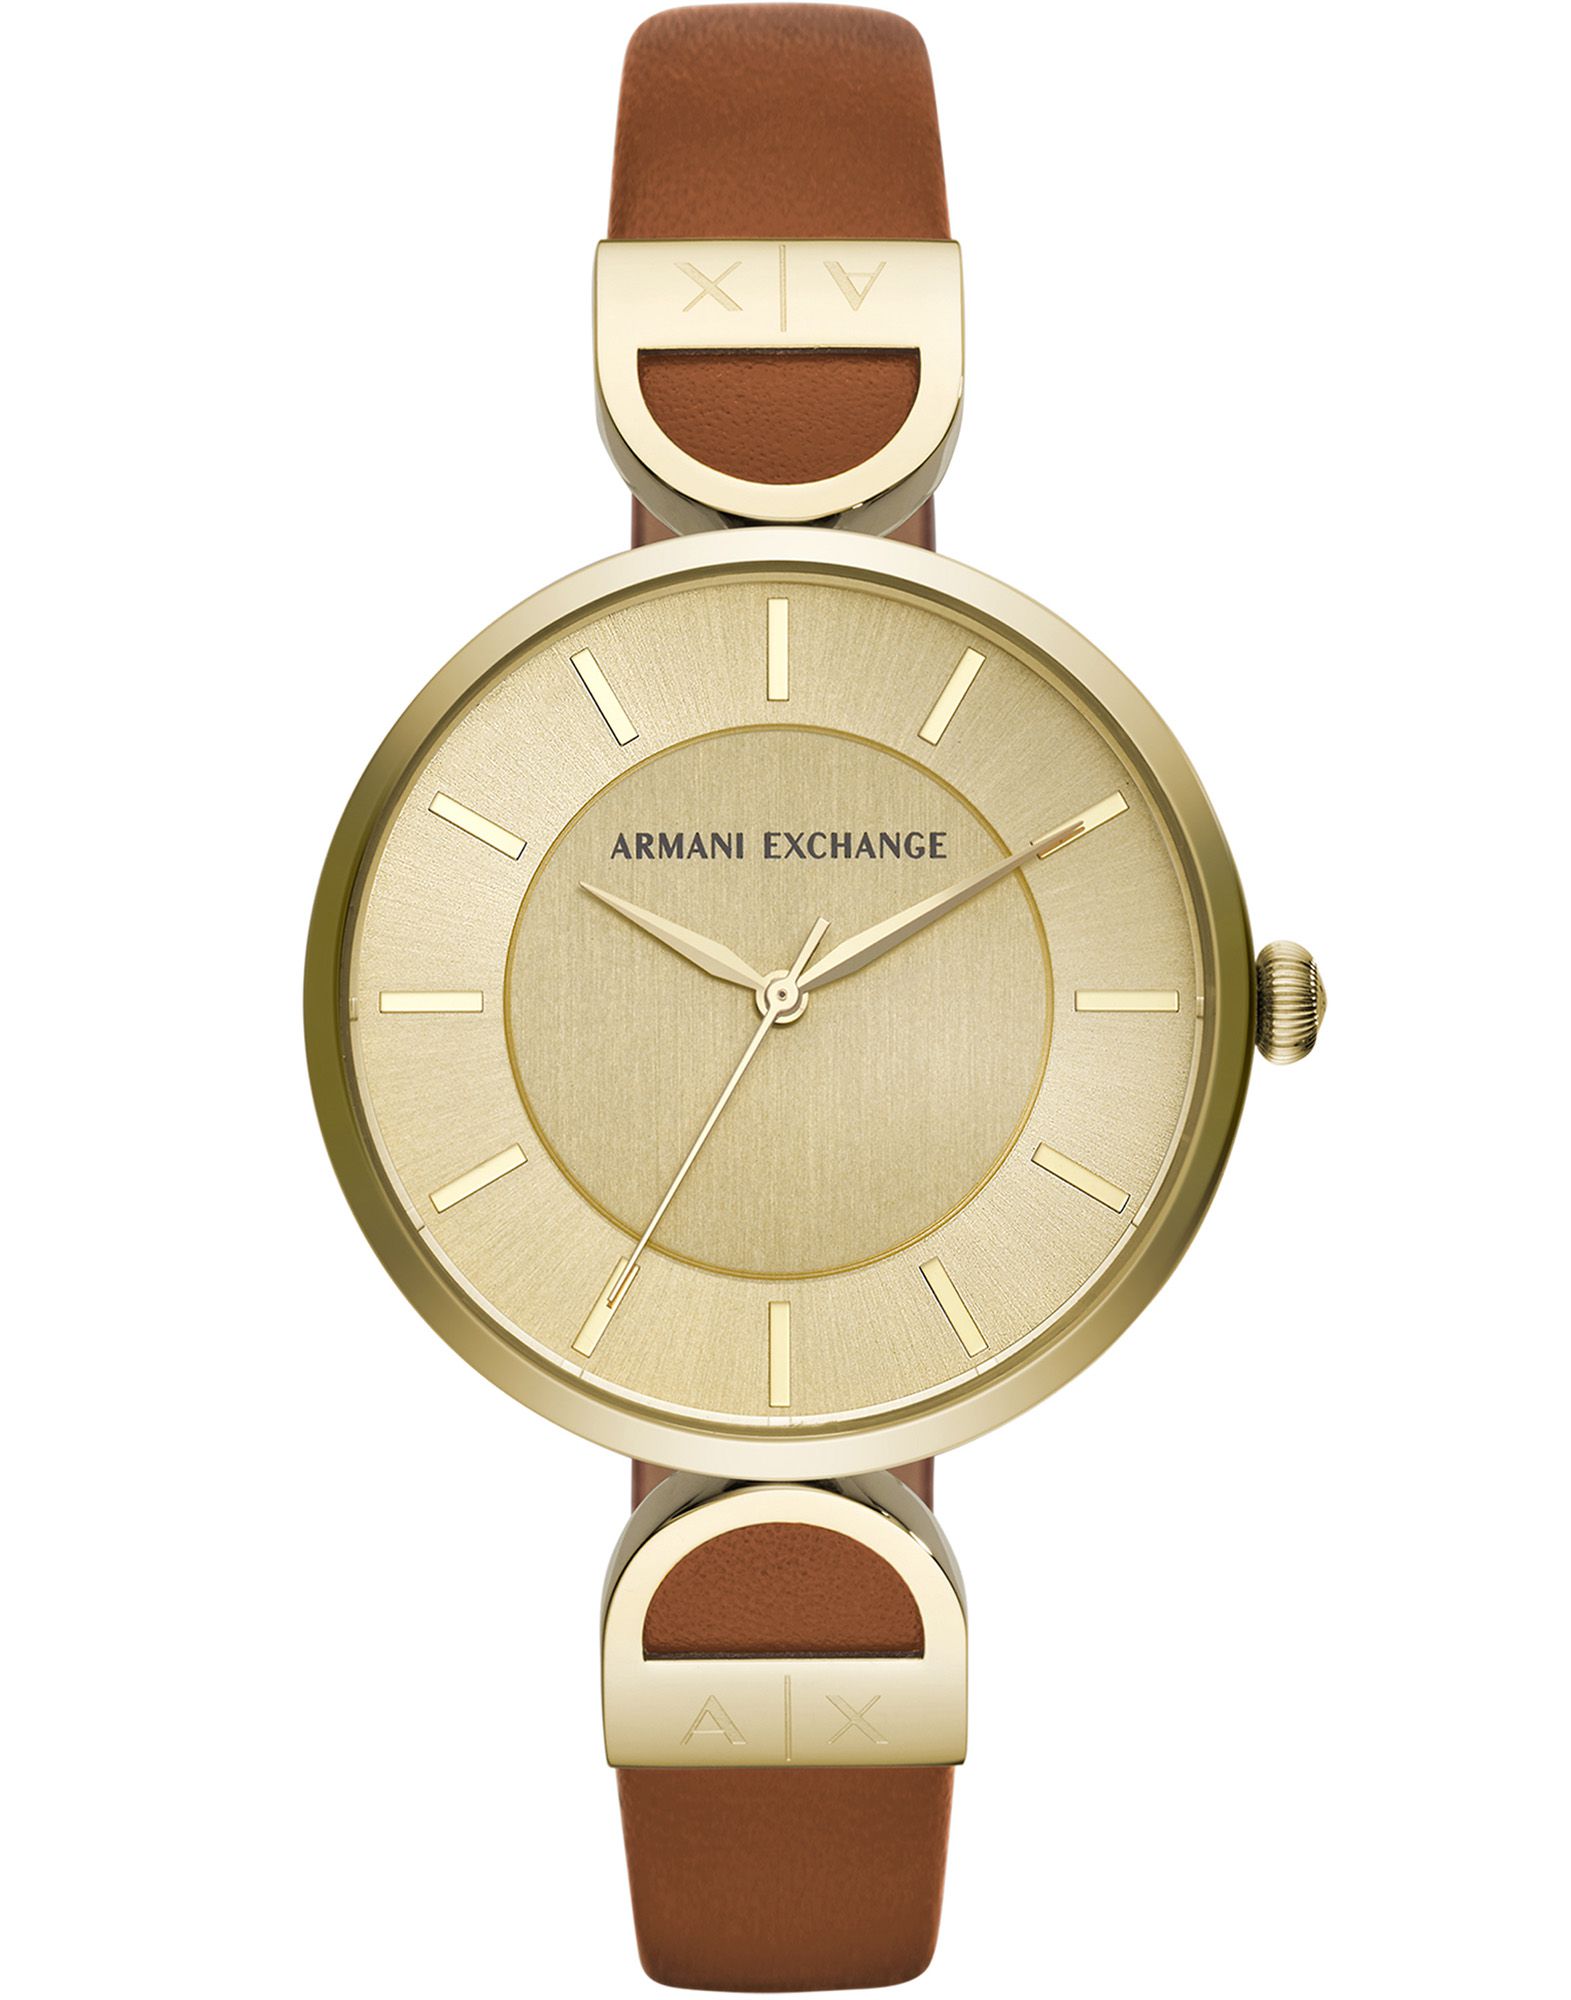 《送料無料》ARMANI EXCHANGE レディース 腕時計 ゴールド ステンレススチール / 革